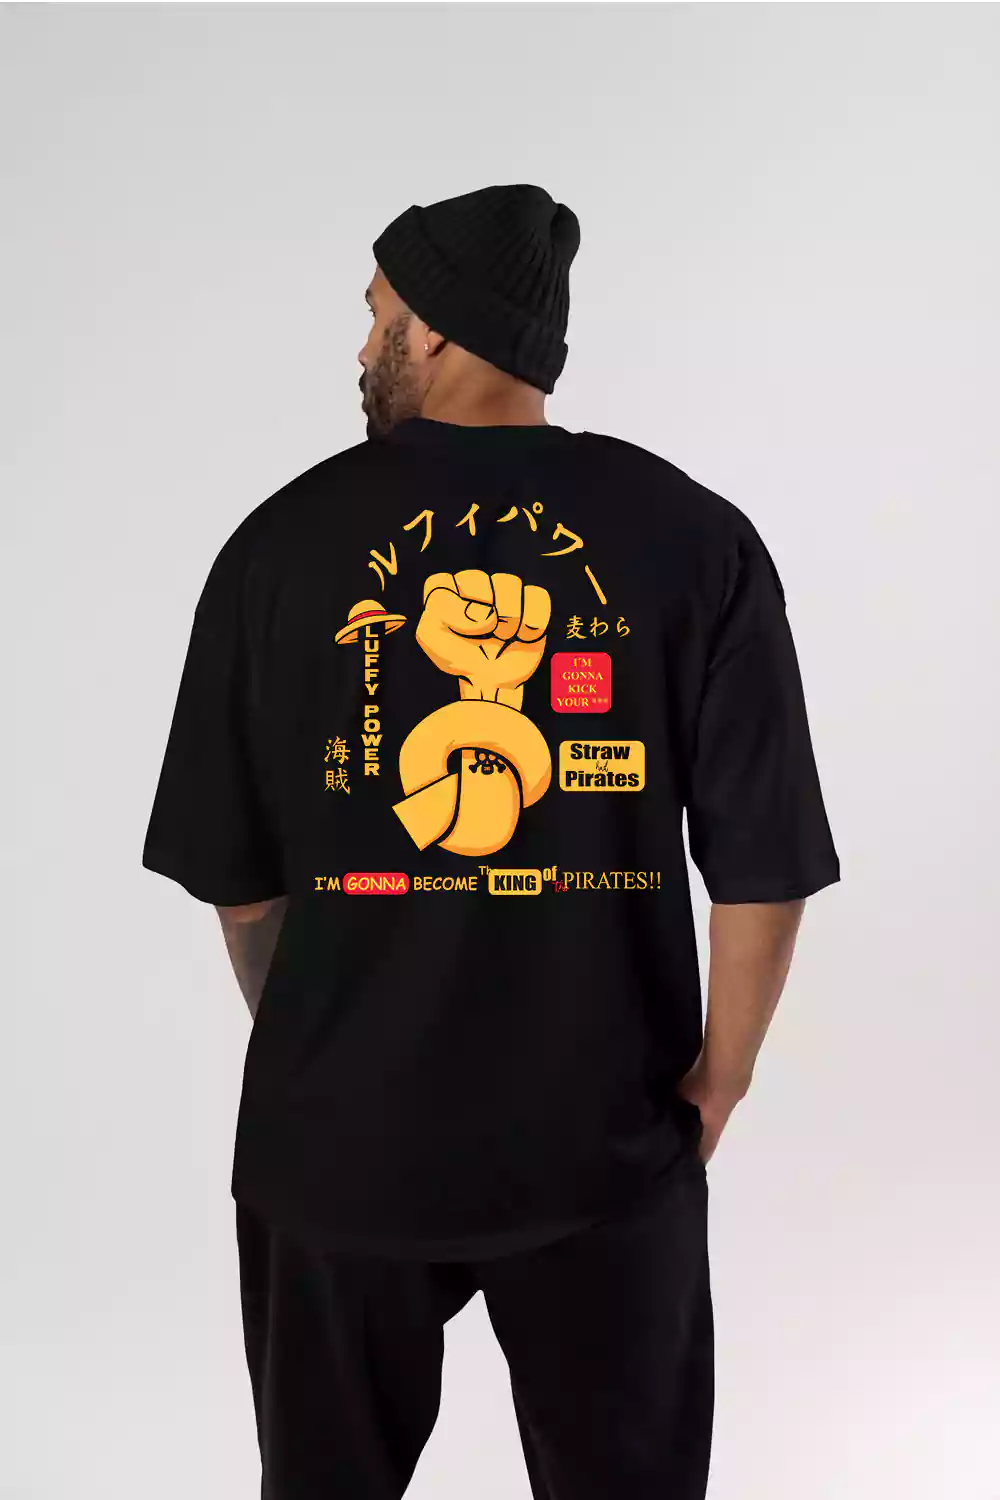 Luffy Power - Sukhiaatma Unisex Oversized Black T-shirt